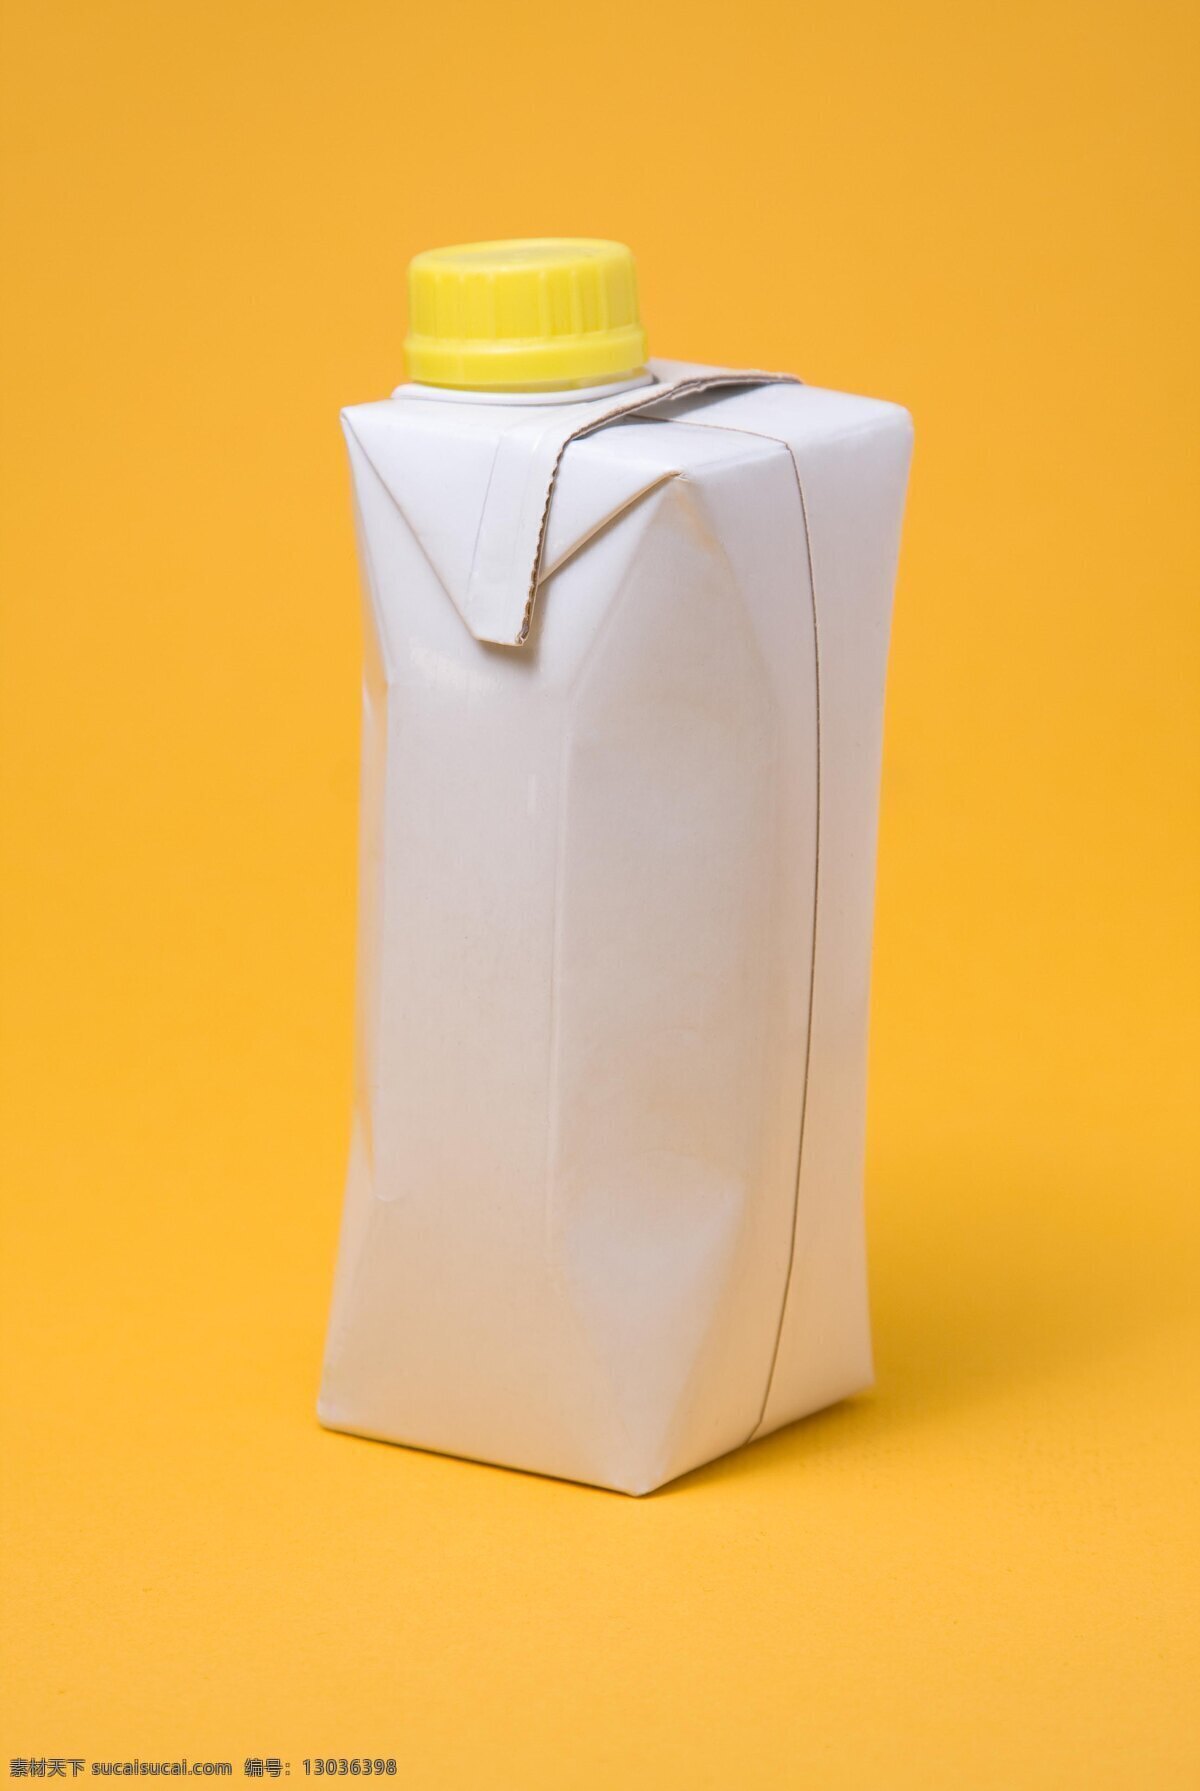 包装盒 高清图片 盒子 环保 牛奶盒 瓶子 生活百科 牛奶 高清 塑料 生活素材 psd源文件 餐饮素材